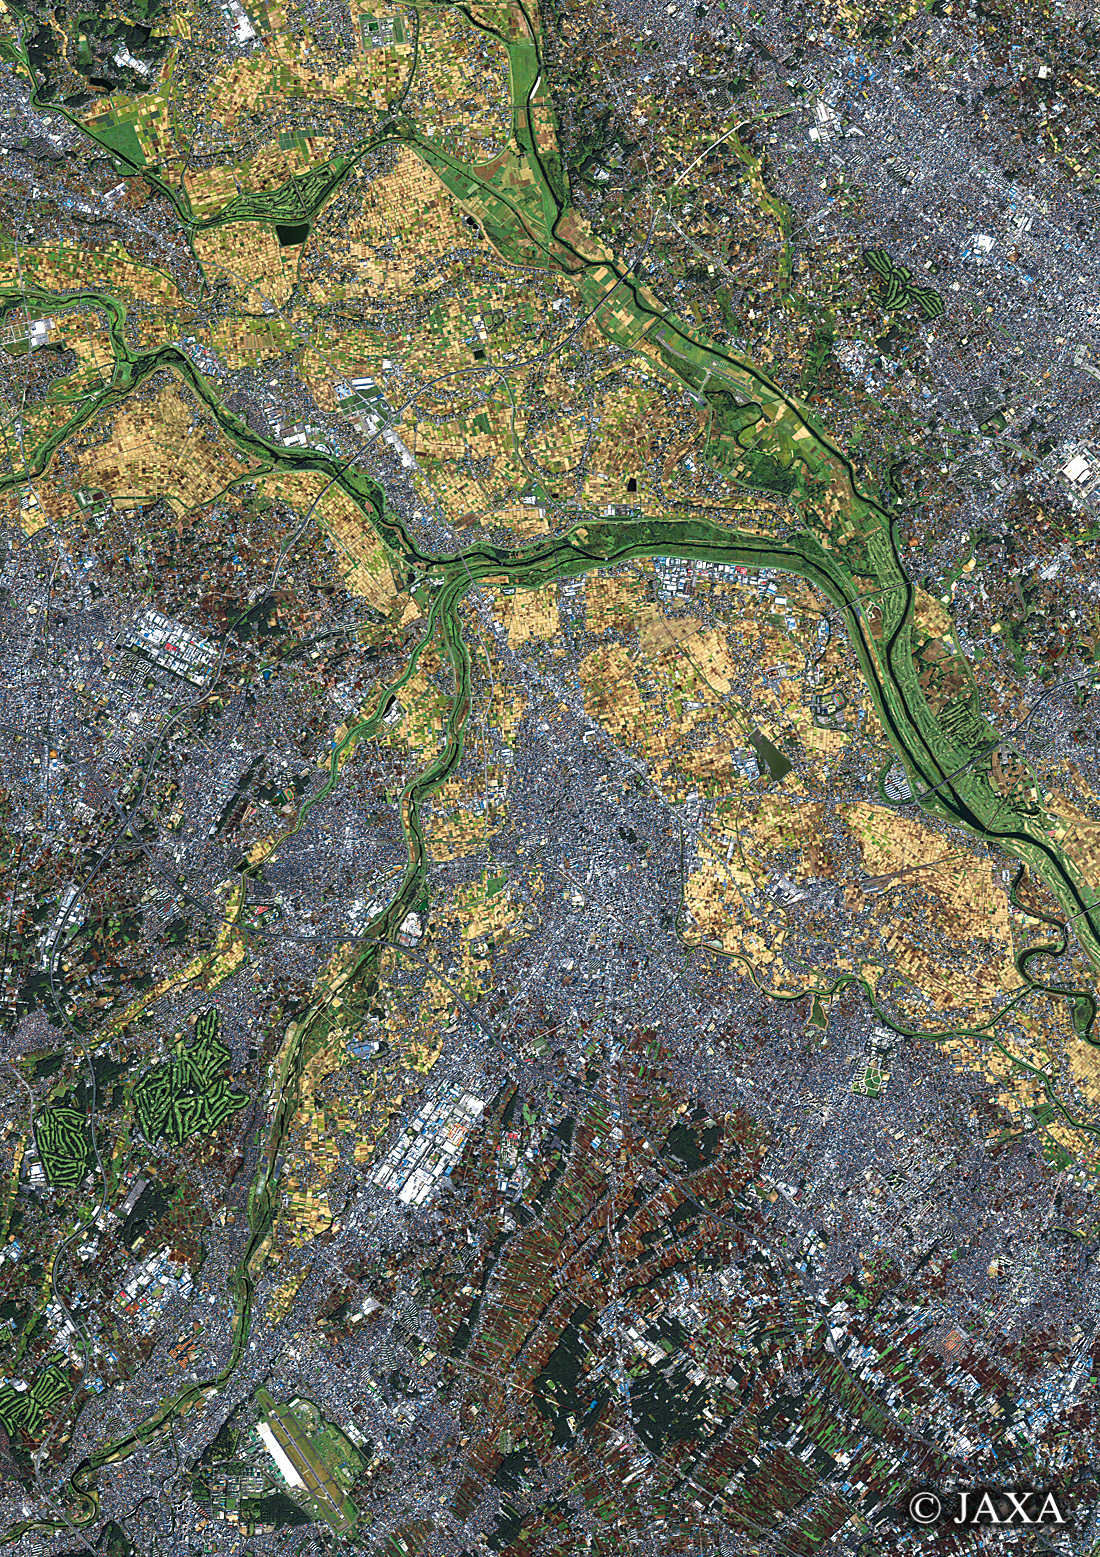 だいちから見た日本の都市 川越市周辺:衛星画像